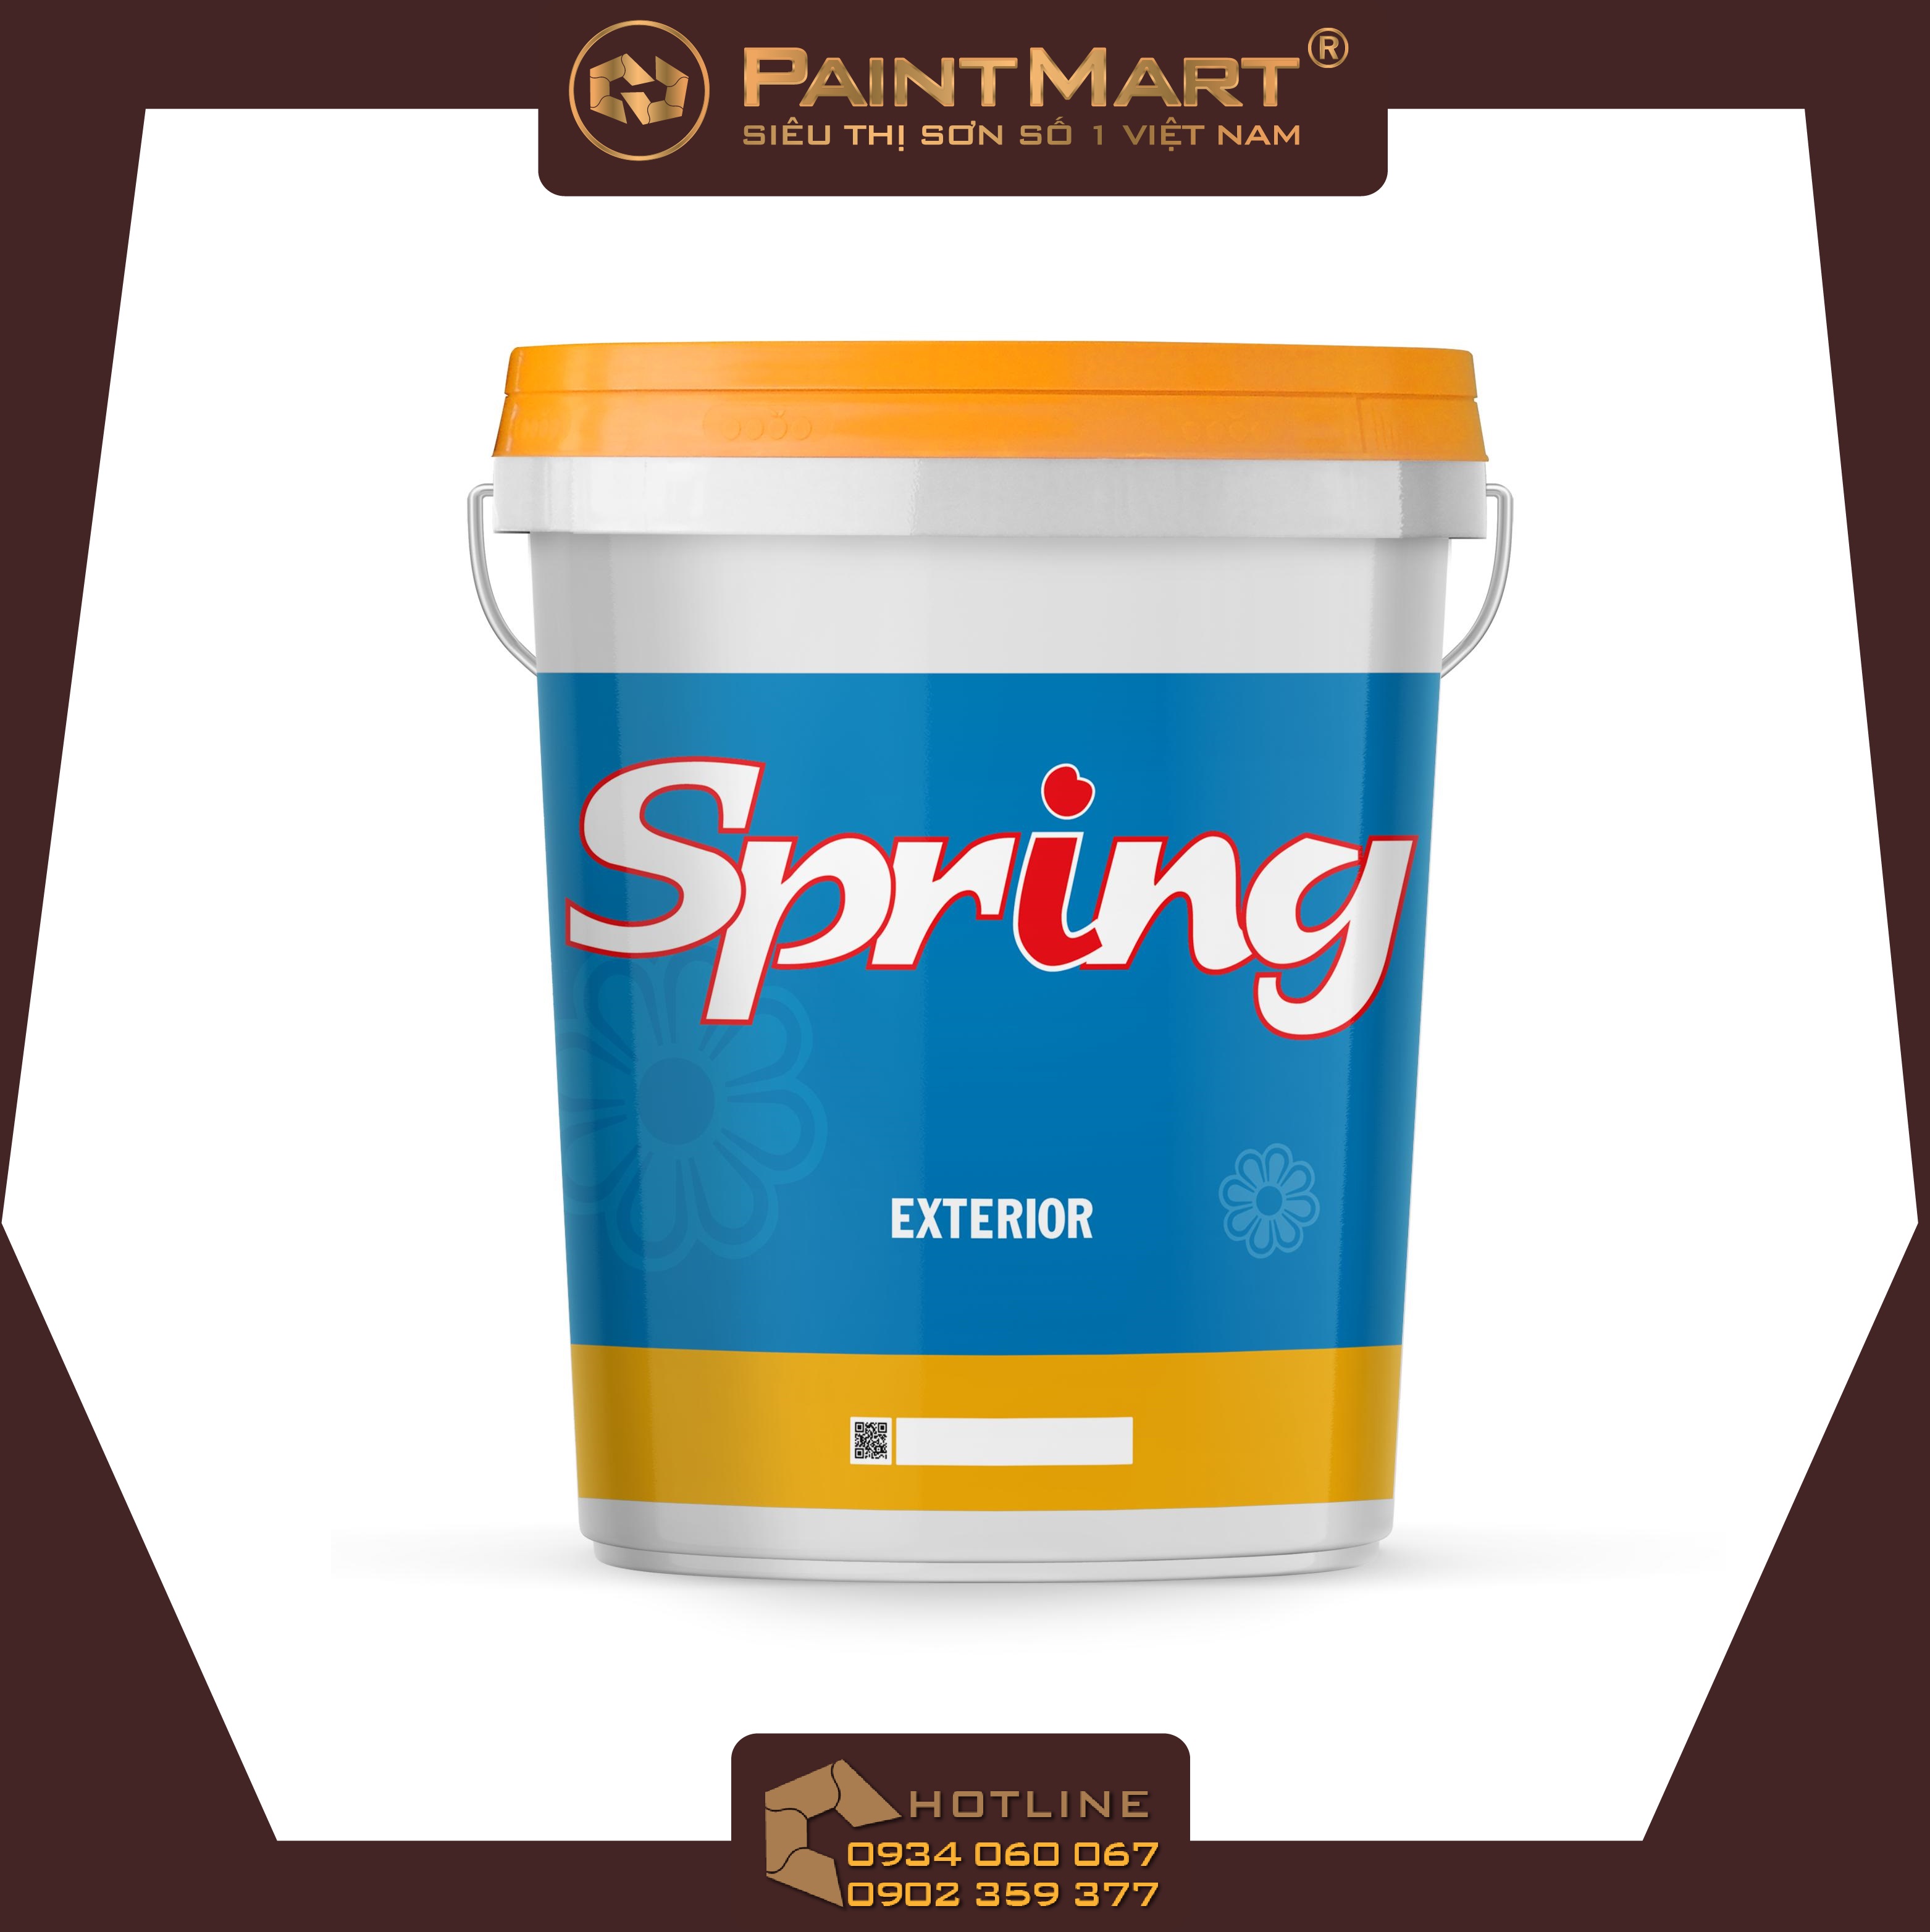 Sơn Boss Spring là một trong những sản phẩm sơn chính hãng và chất lượng mà bạn không thể bỏ qua. Độ bền cao và độ phủ lớn giúp cho bề mặt được bảo vệ tốt hơn. Đến với chúng tôi, bạn sẽ được trải nghiệm sản phẩm sơn tuyệt vời này.